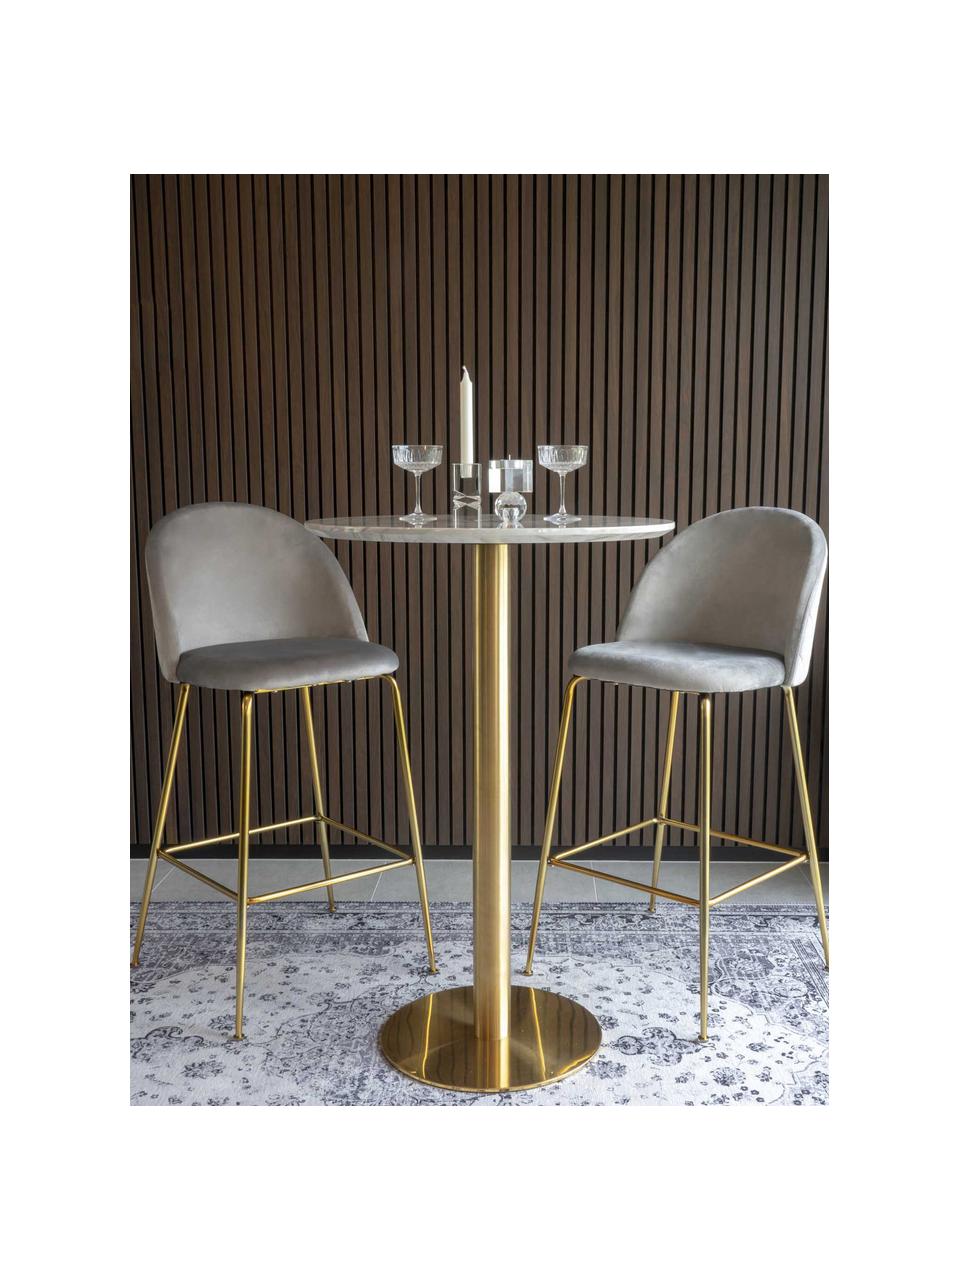 Ronde hoge tafel Bolzano in marmerlook, Ø 70 cm, Tafelblad: MDF, walnoothoutfineer, Marmer-look wit, goudkleurig, Ø 70 x H 105 cm